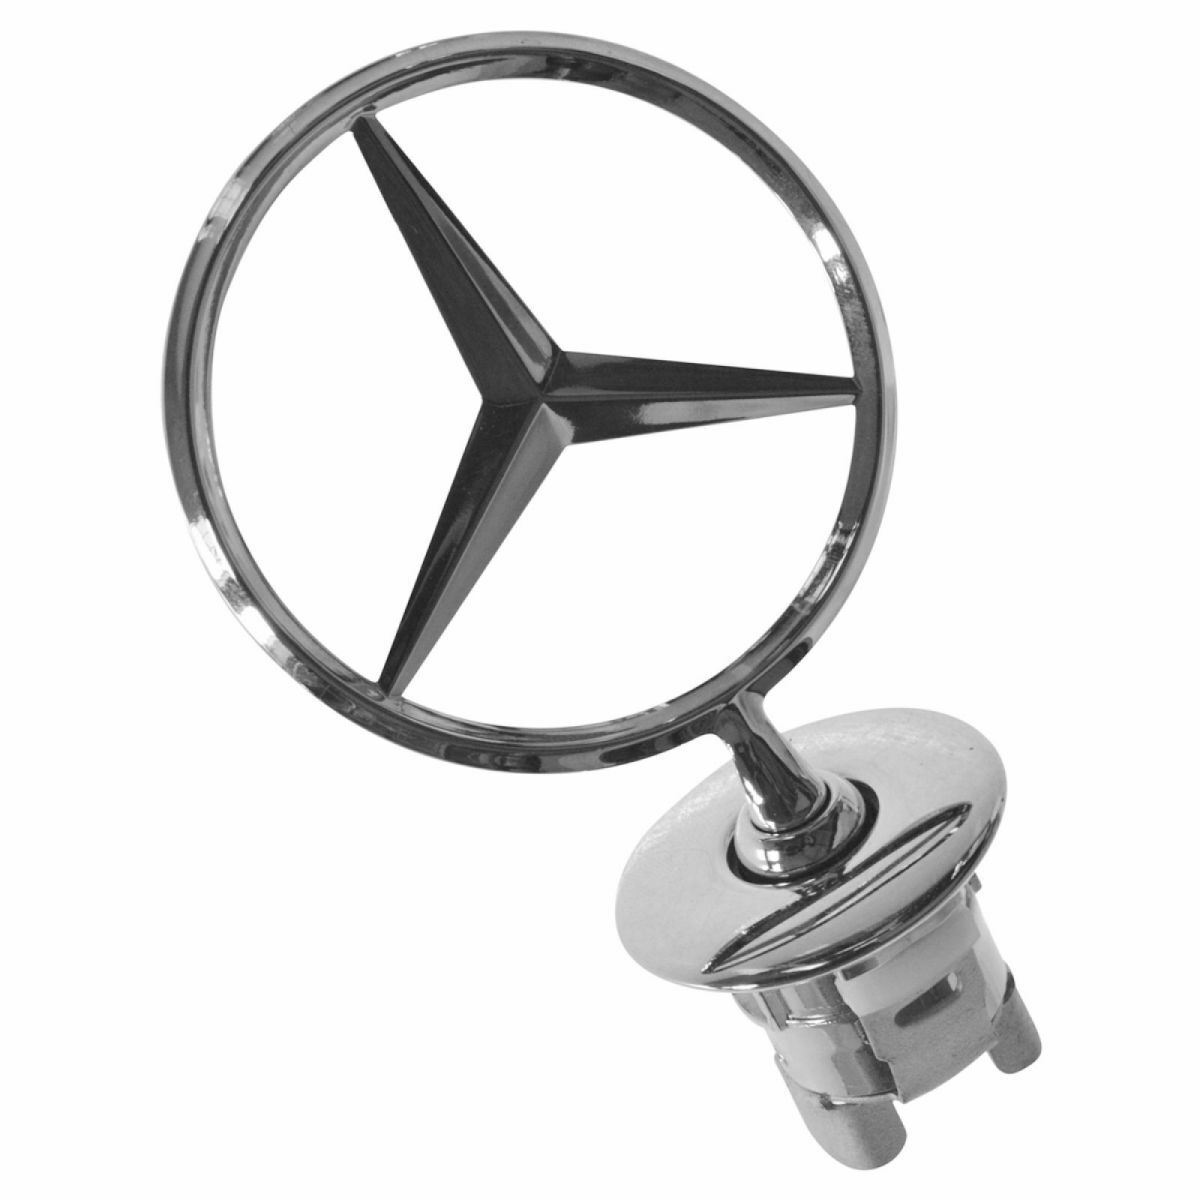 Chrome Hood Ornament for Mercedes Benz S350 S550 C250 C300 E350 E63 AMG